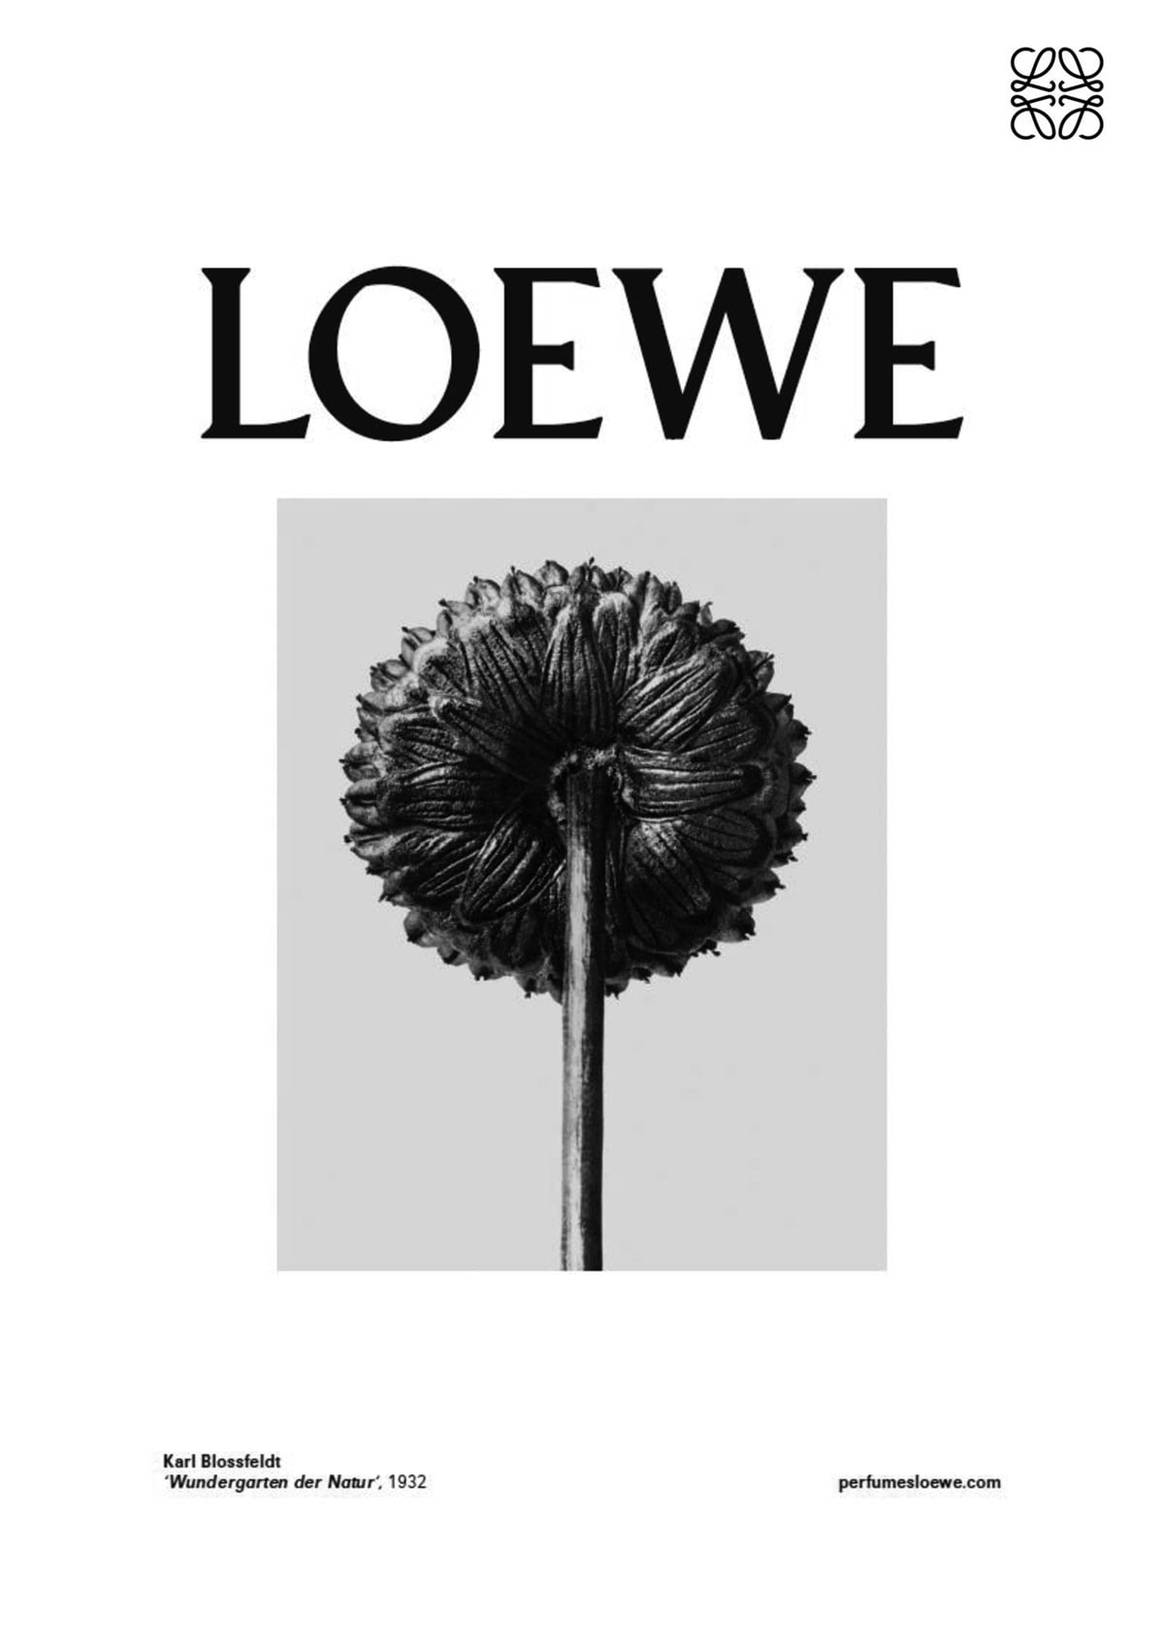 Loewe rinde homenaje en el Thyssen al naturalismo de Karl Blossfeldt